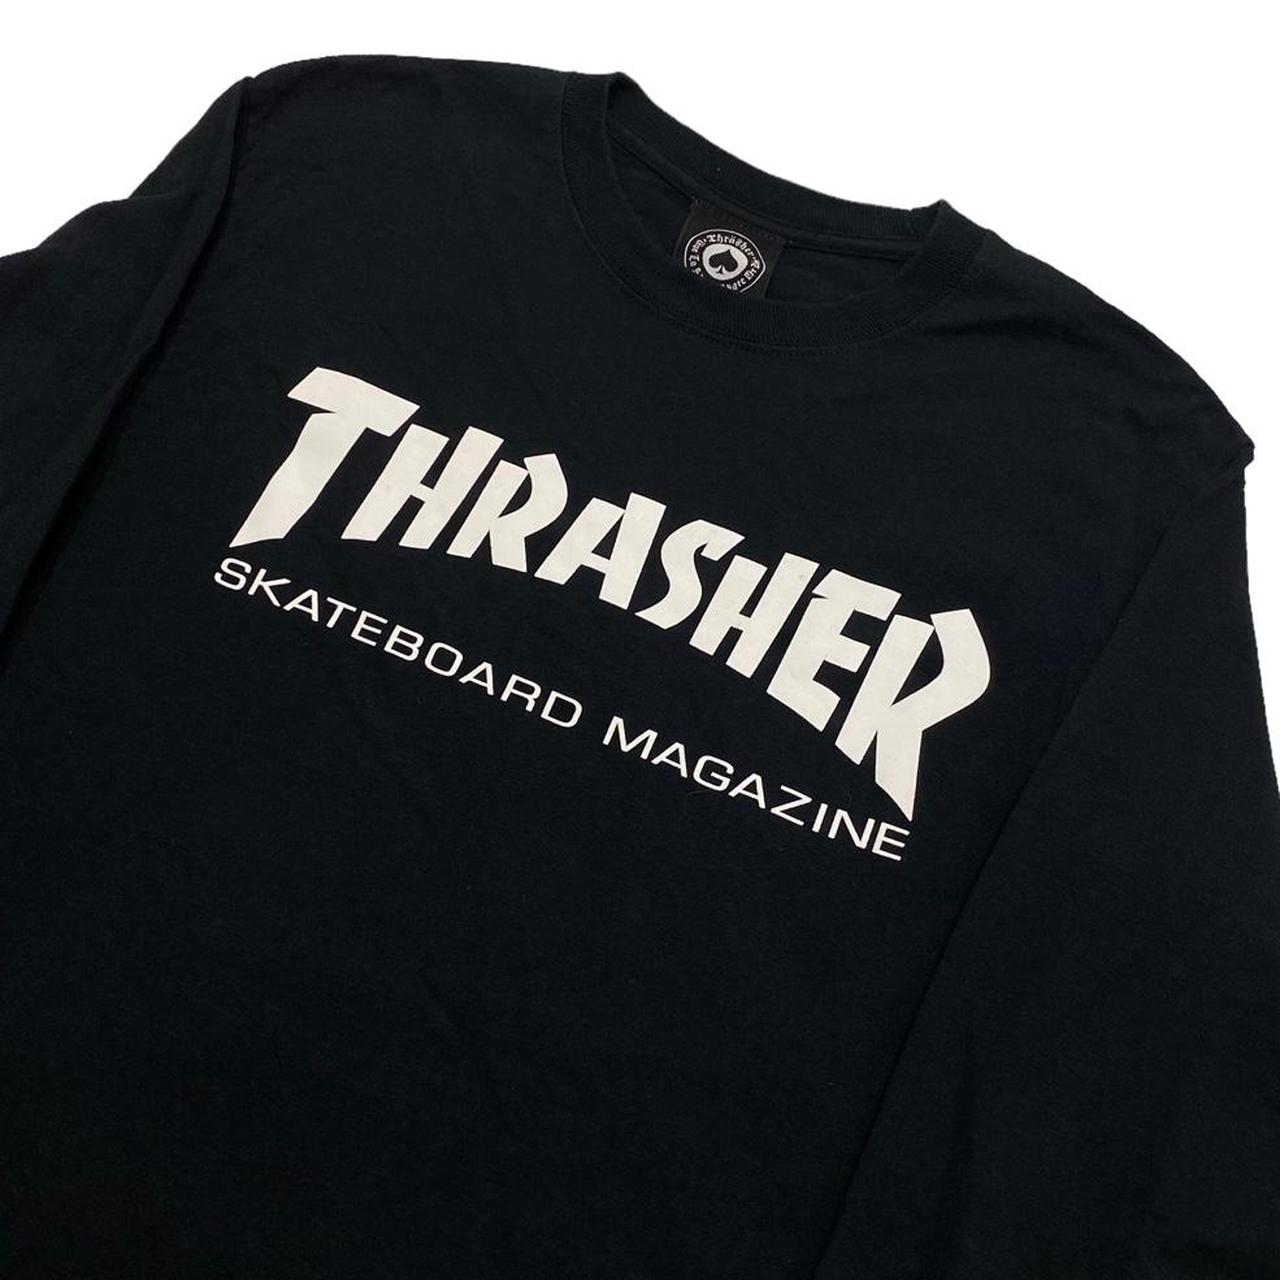 Thrasher Men's Black and White T-shirt | Depop